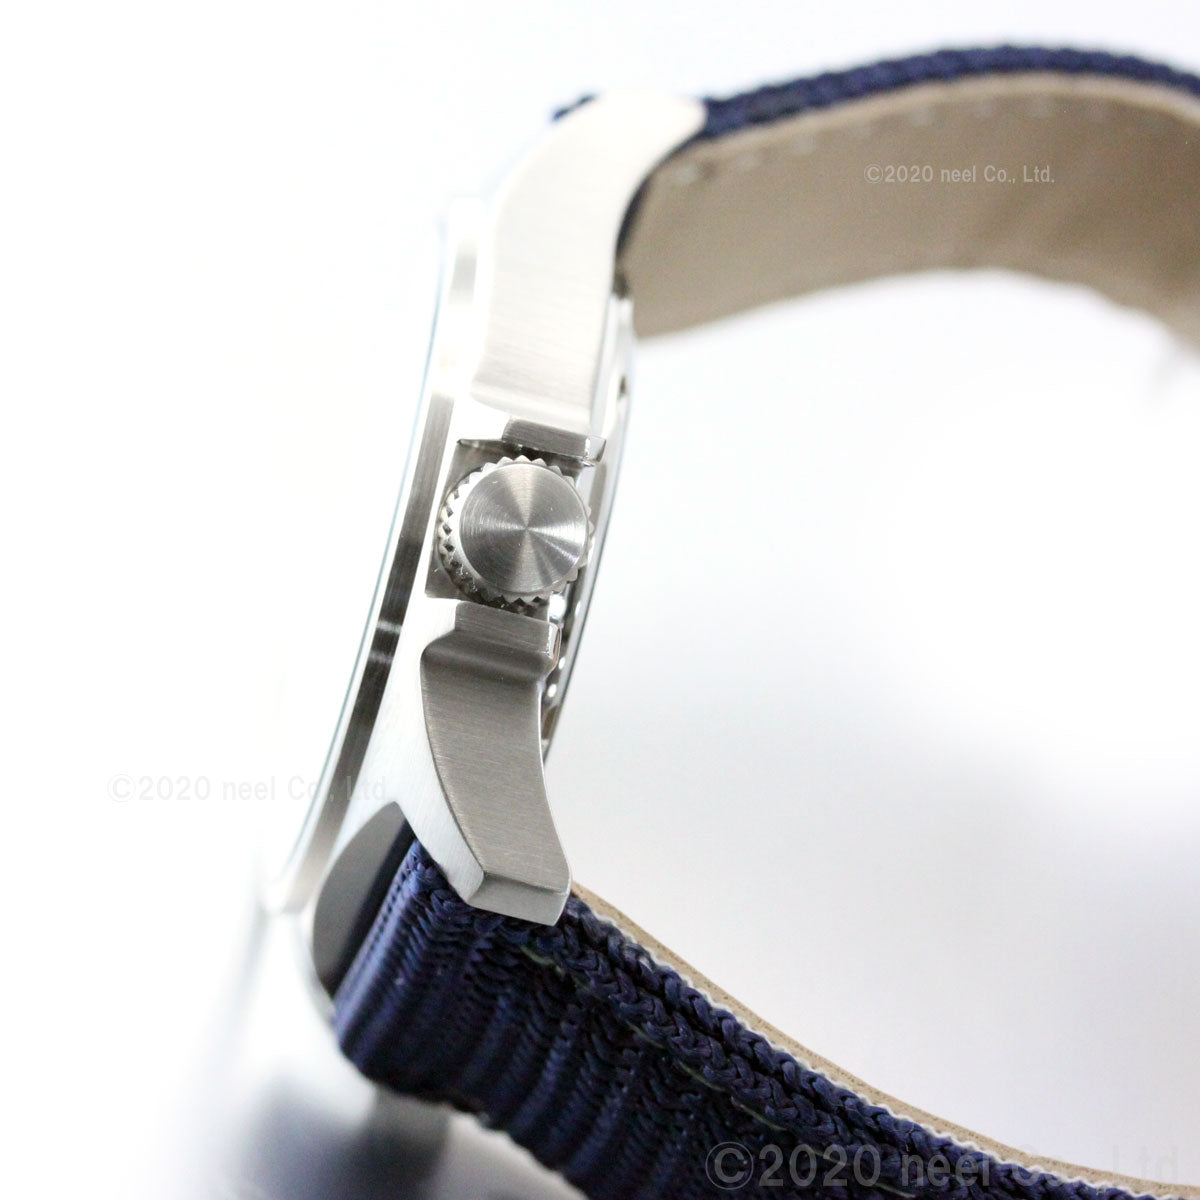 KENTEX ケンテックス 腕時計 メンズ JSDF スタンダード 自衛隊モデル 航空自衛隊 ナイロンバンド S455M-02【正規品】